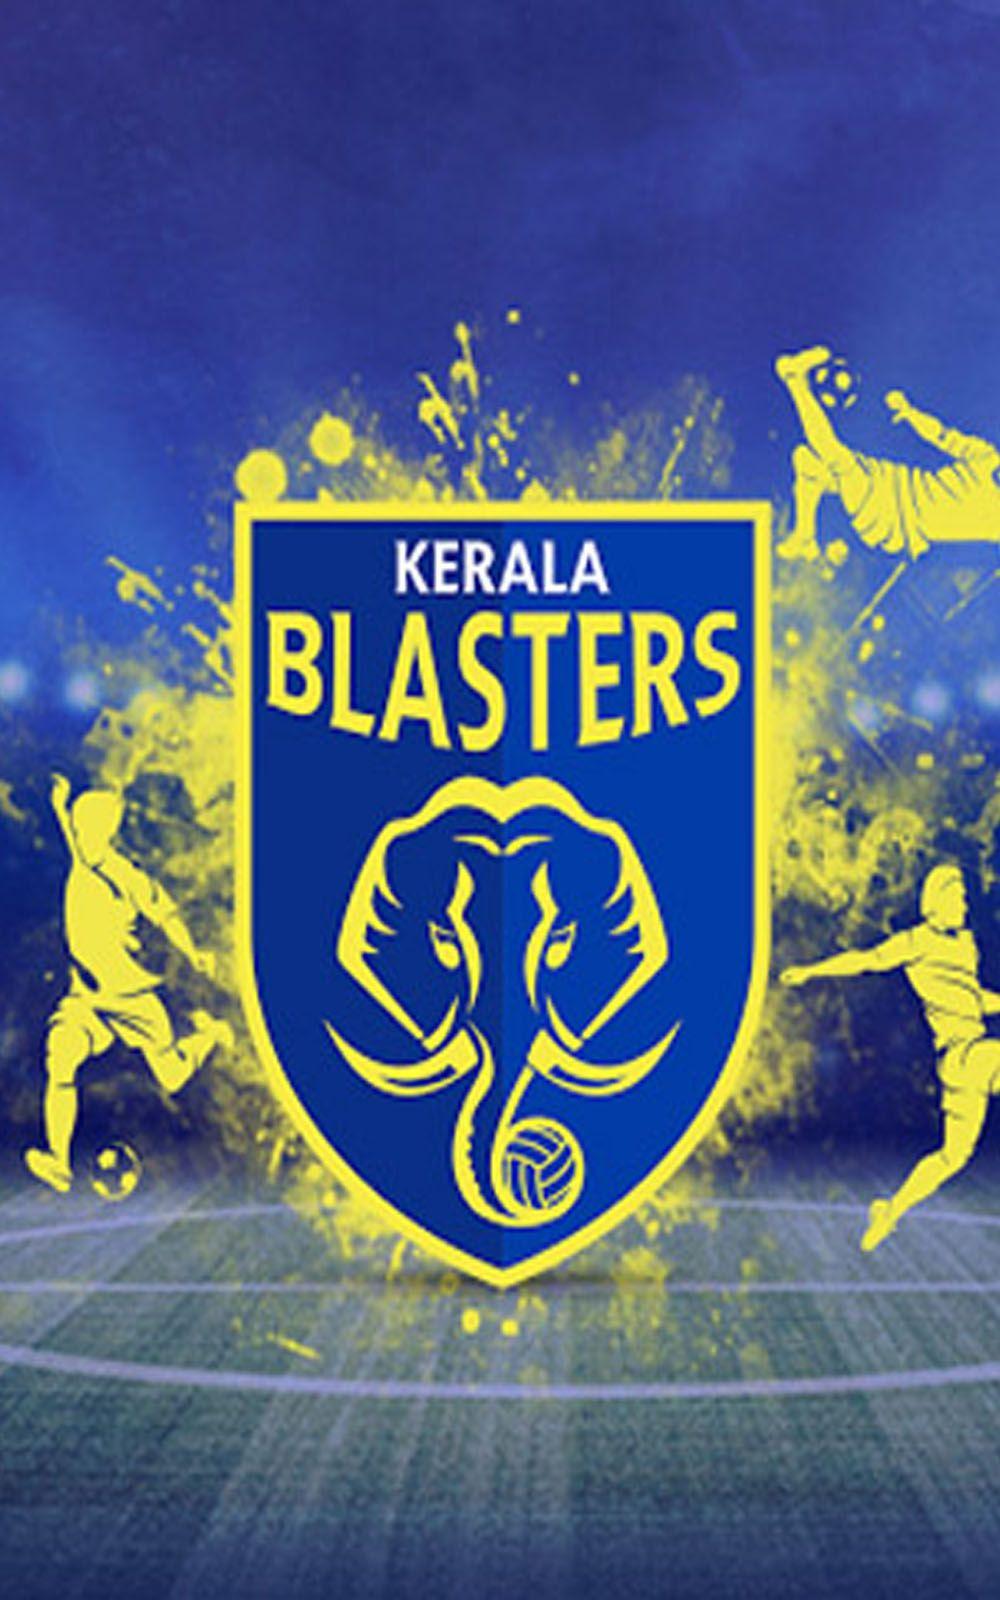 Kerala blasters forever